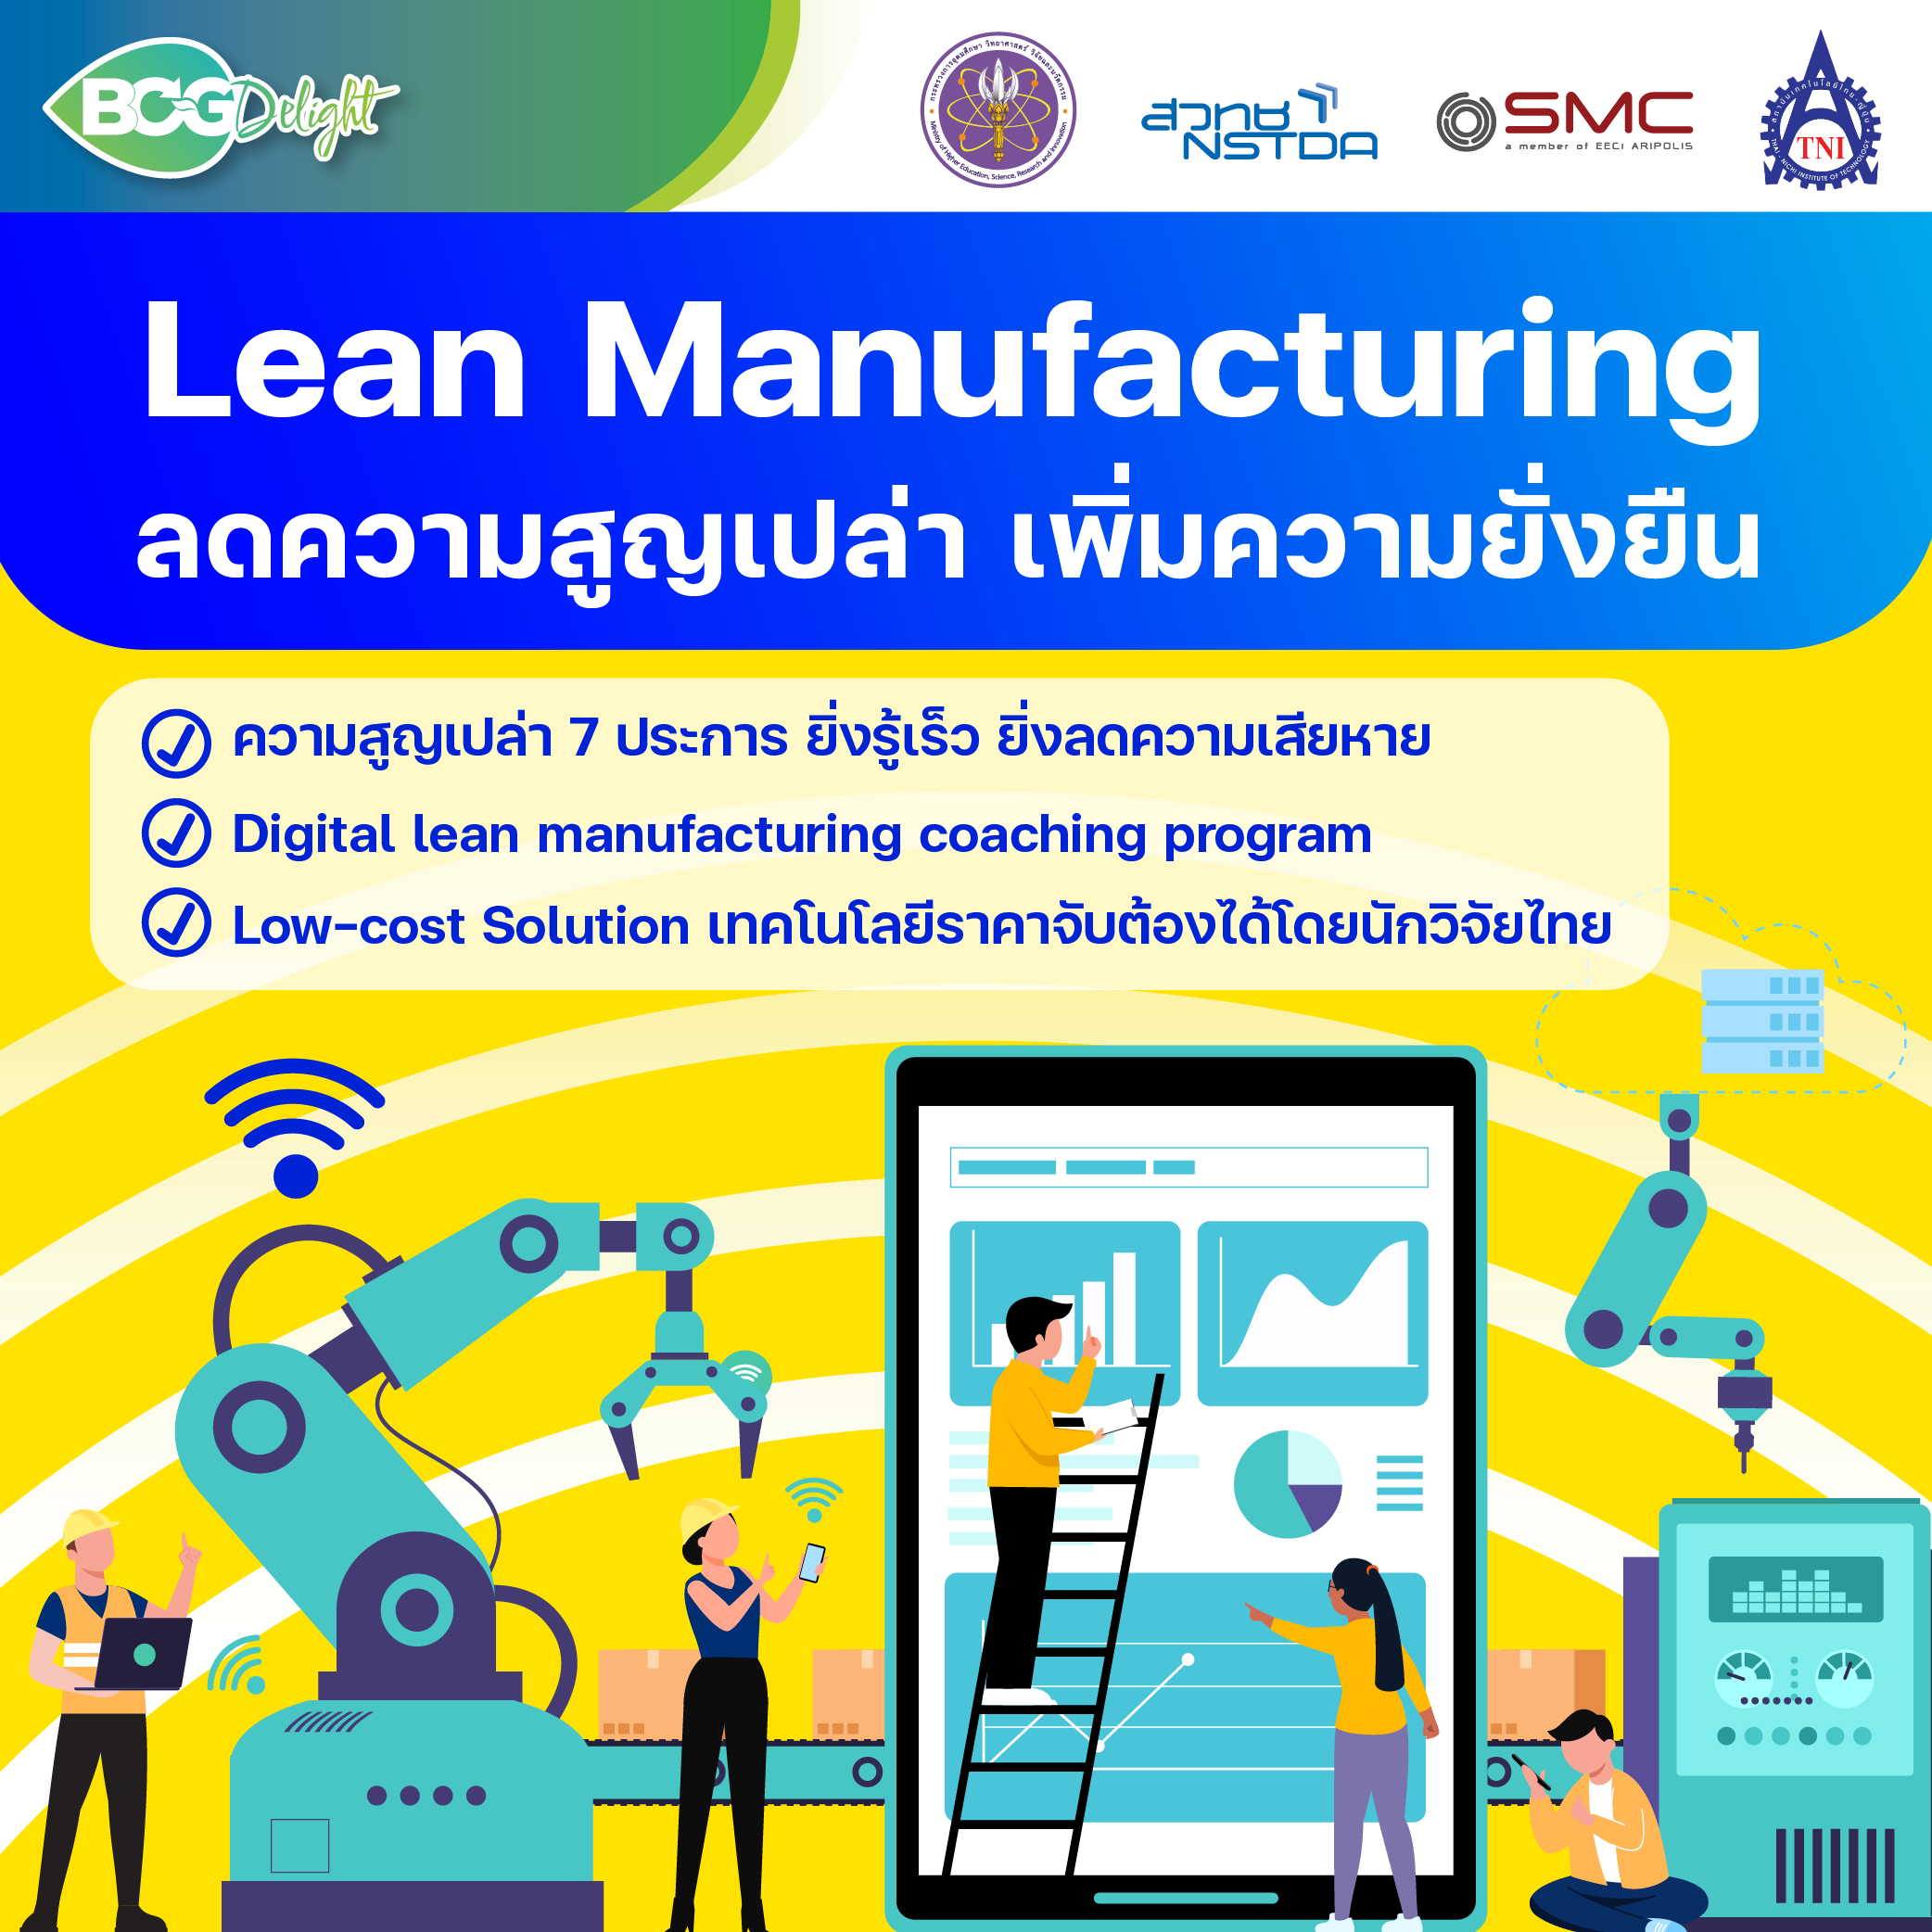 ‘Lean Manufacturing’ ลดความสูญเปล่า เพิ่มความยั่งยืน